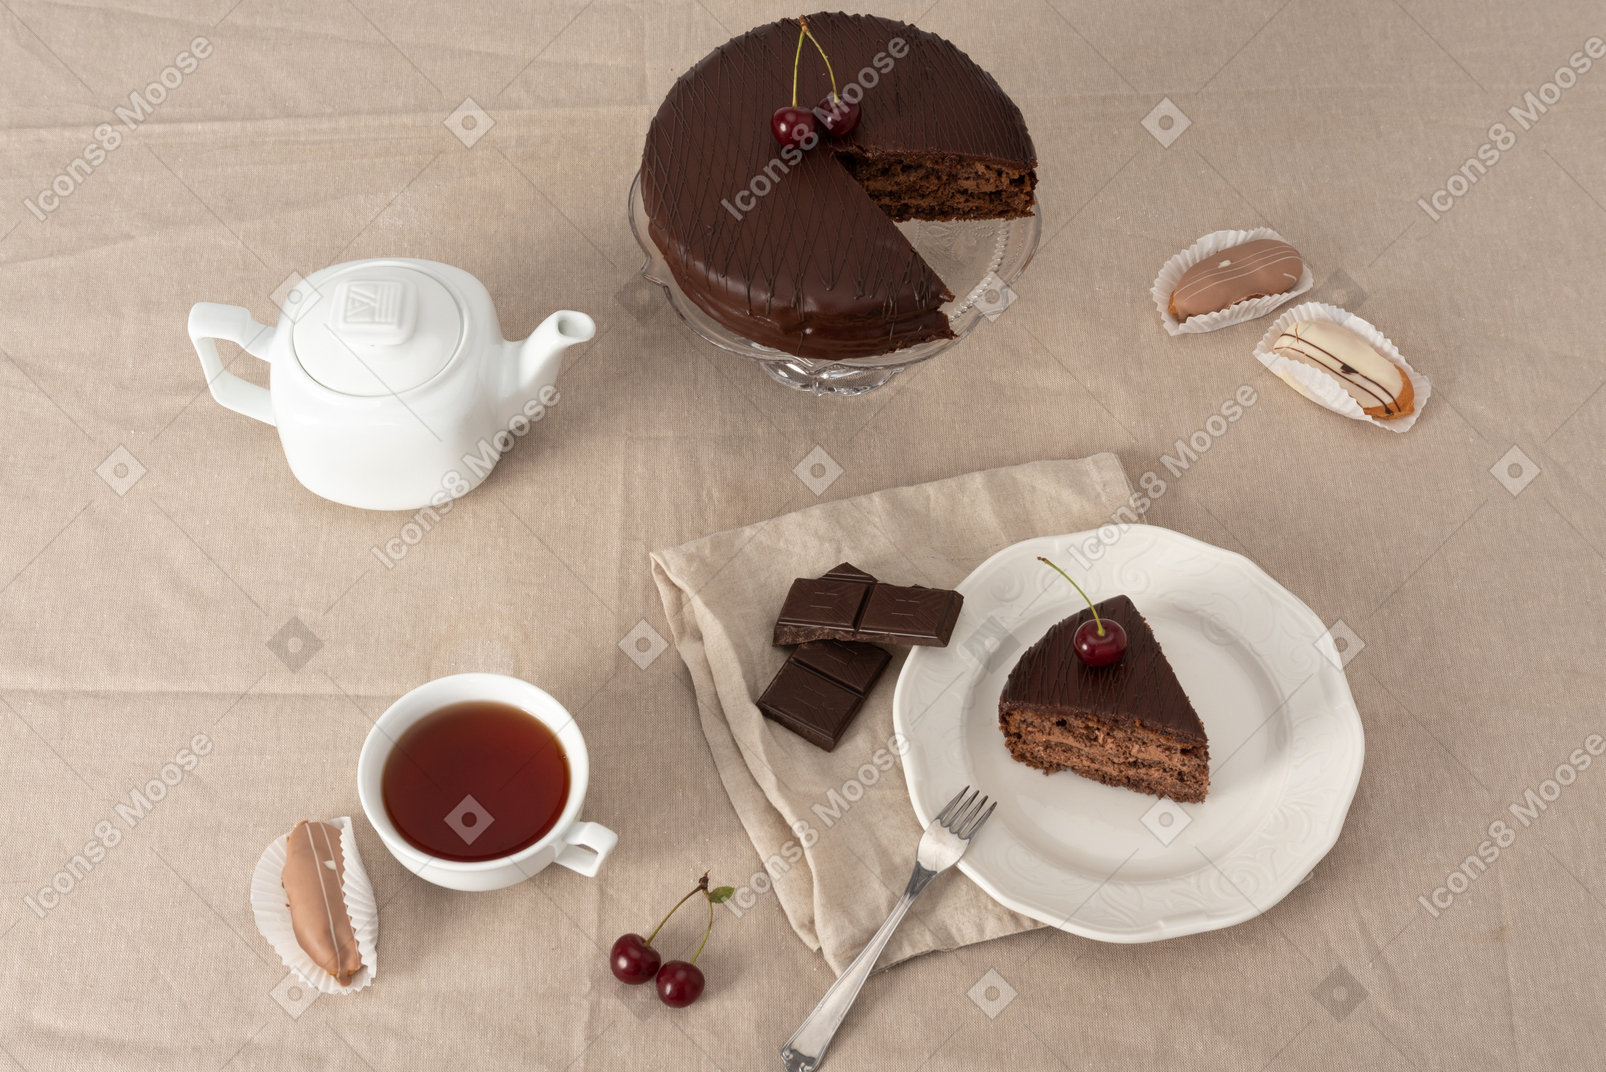 Bolo de chocolate no bolo stand, bule, xícara de chá e pedaço de bolo no prato